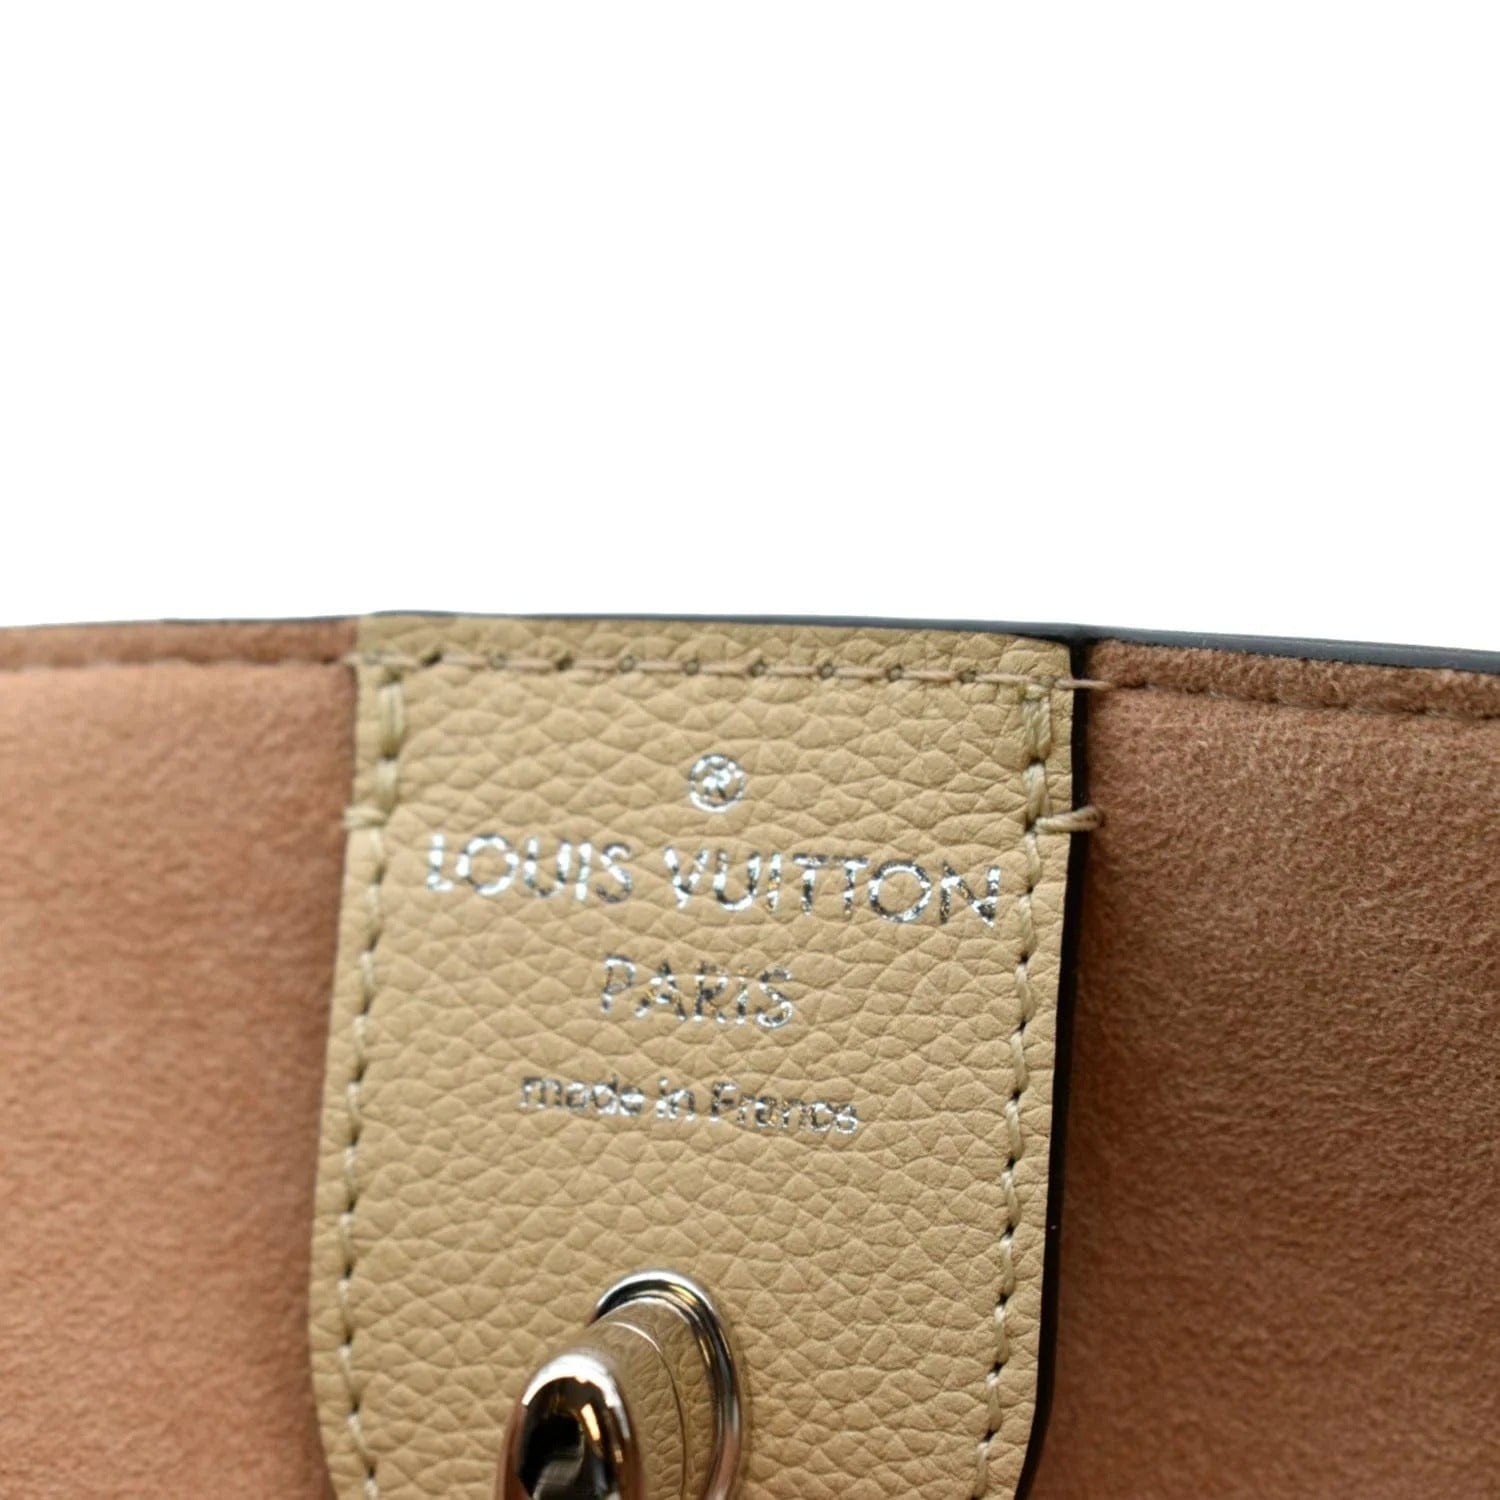 Louis Vuitton Lockme Cabas Leather Tote Bag Bicolor